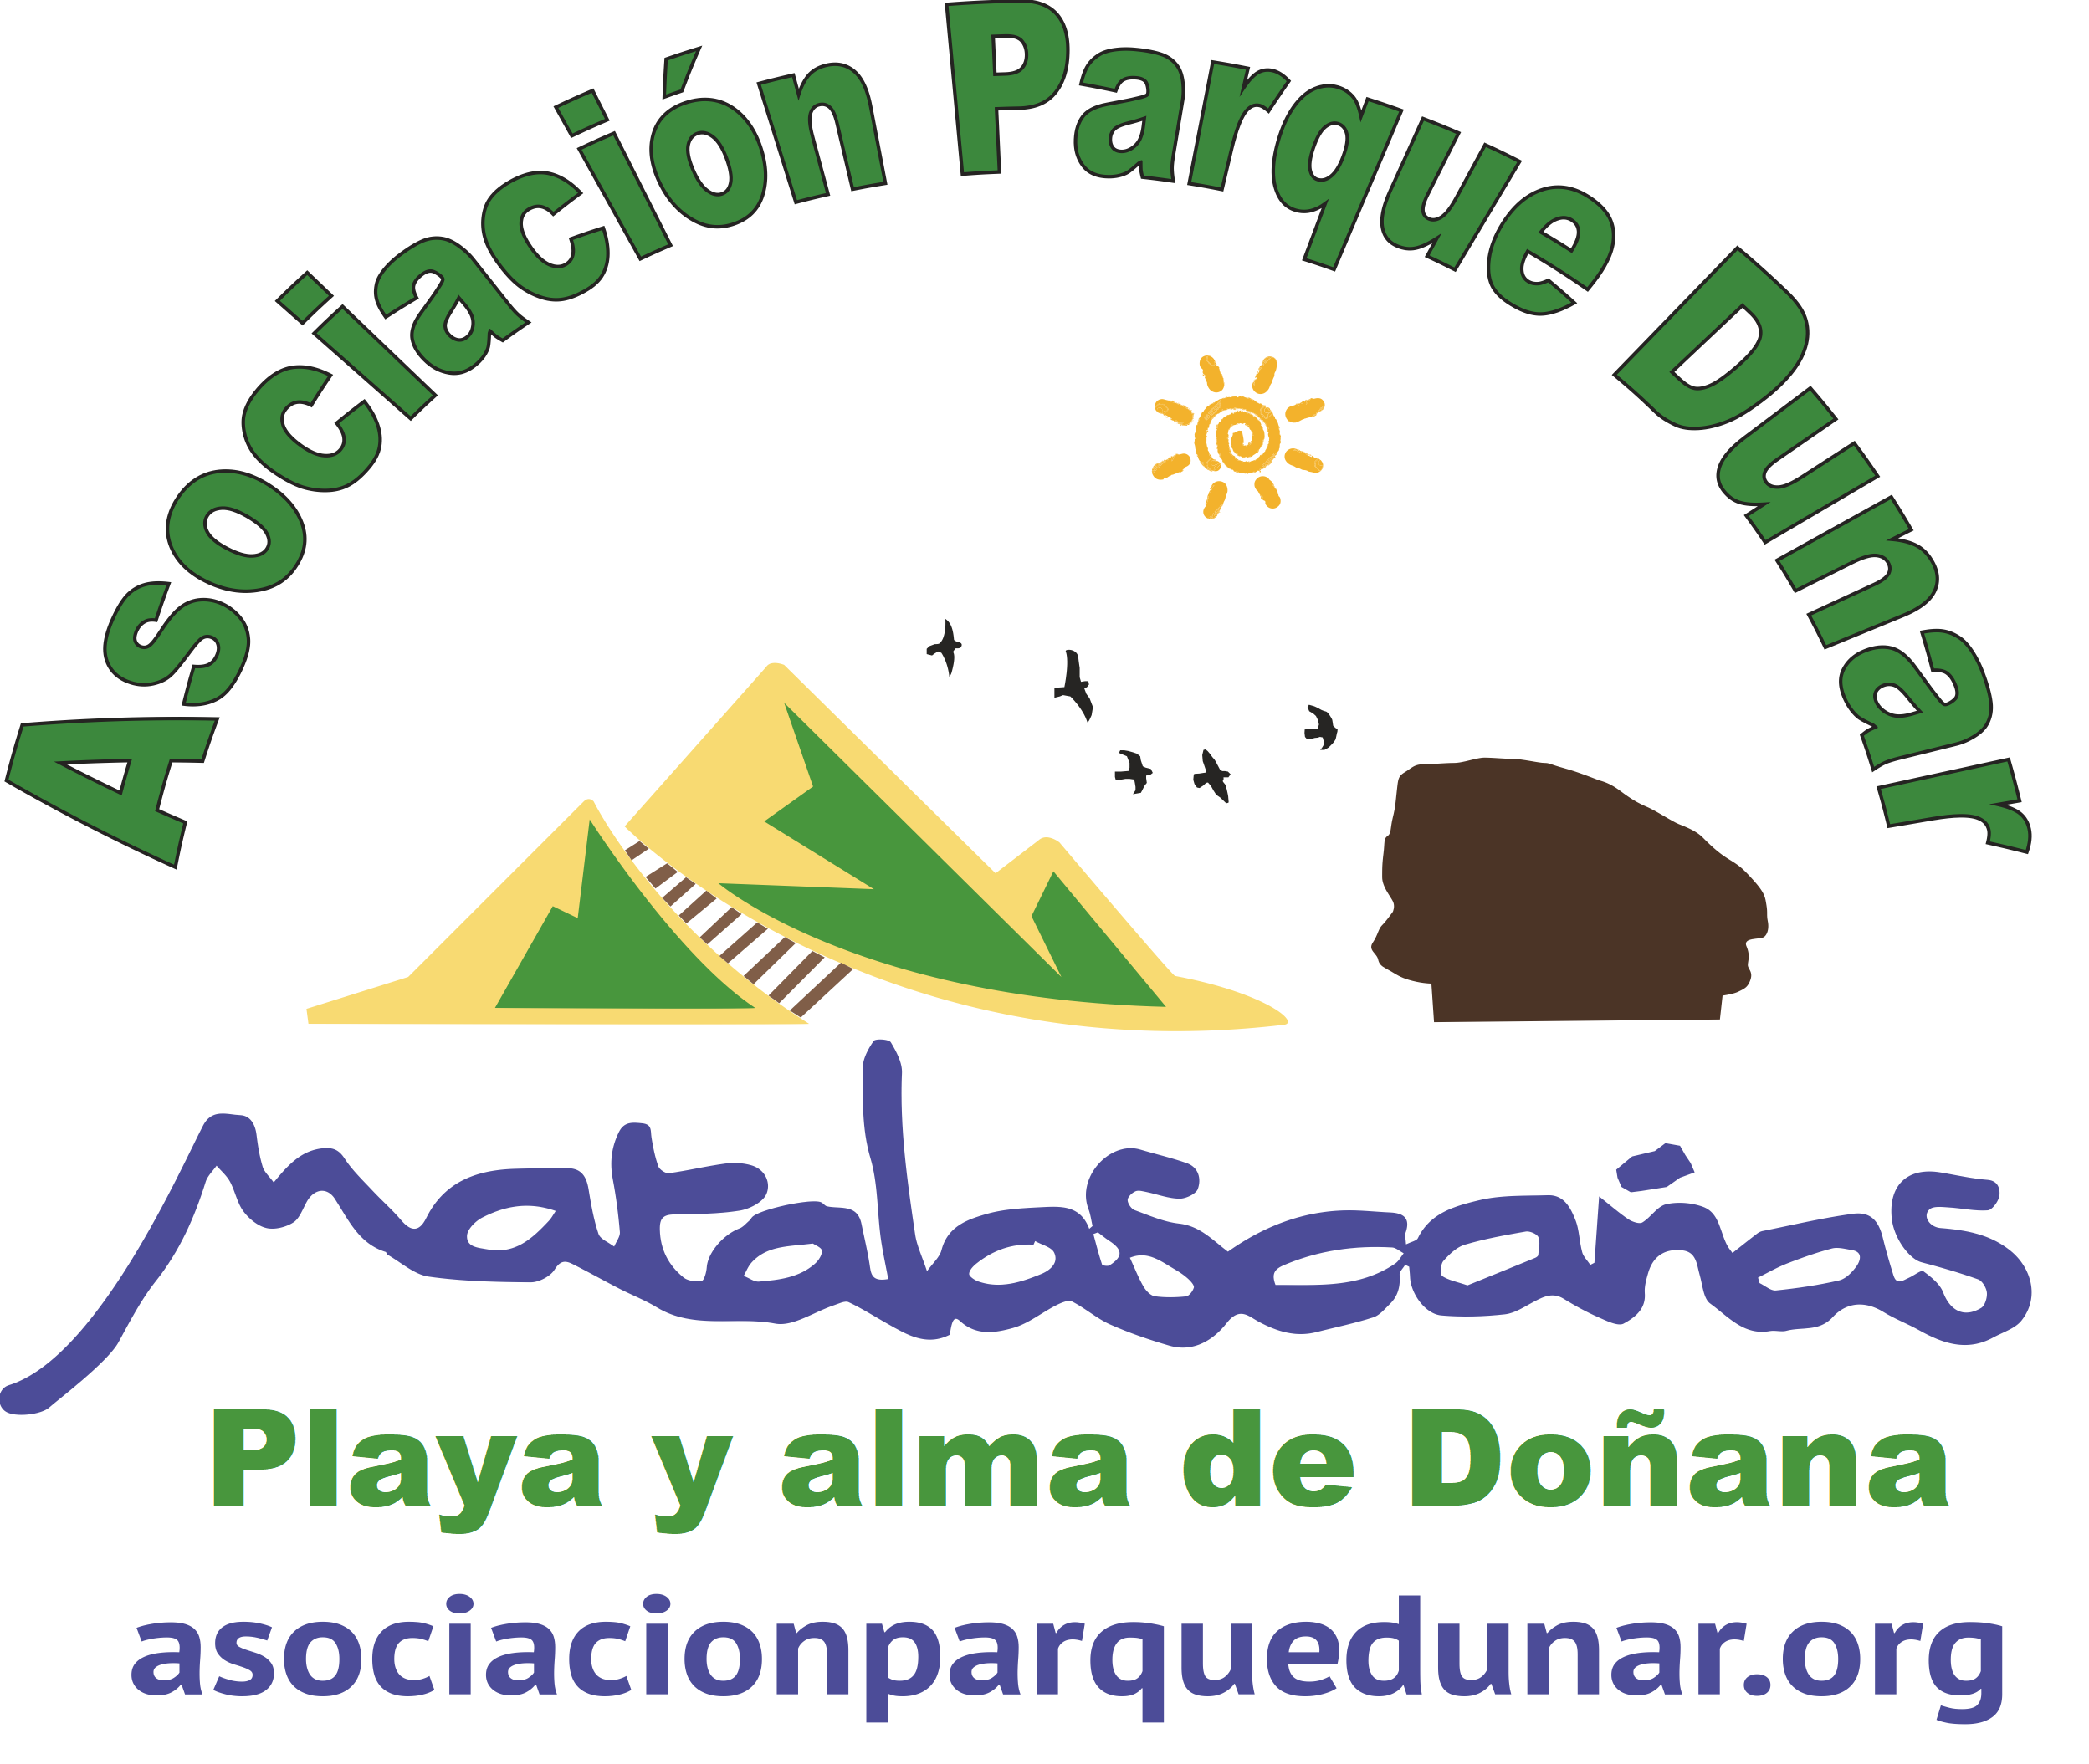 Asociación Parque Dunar